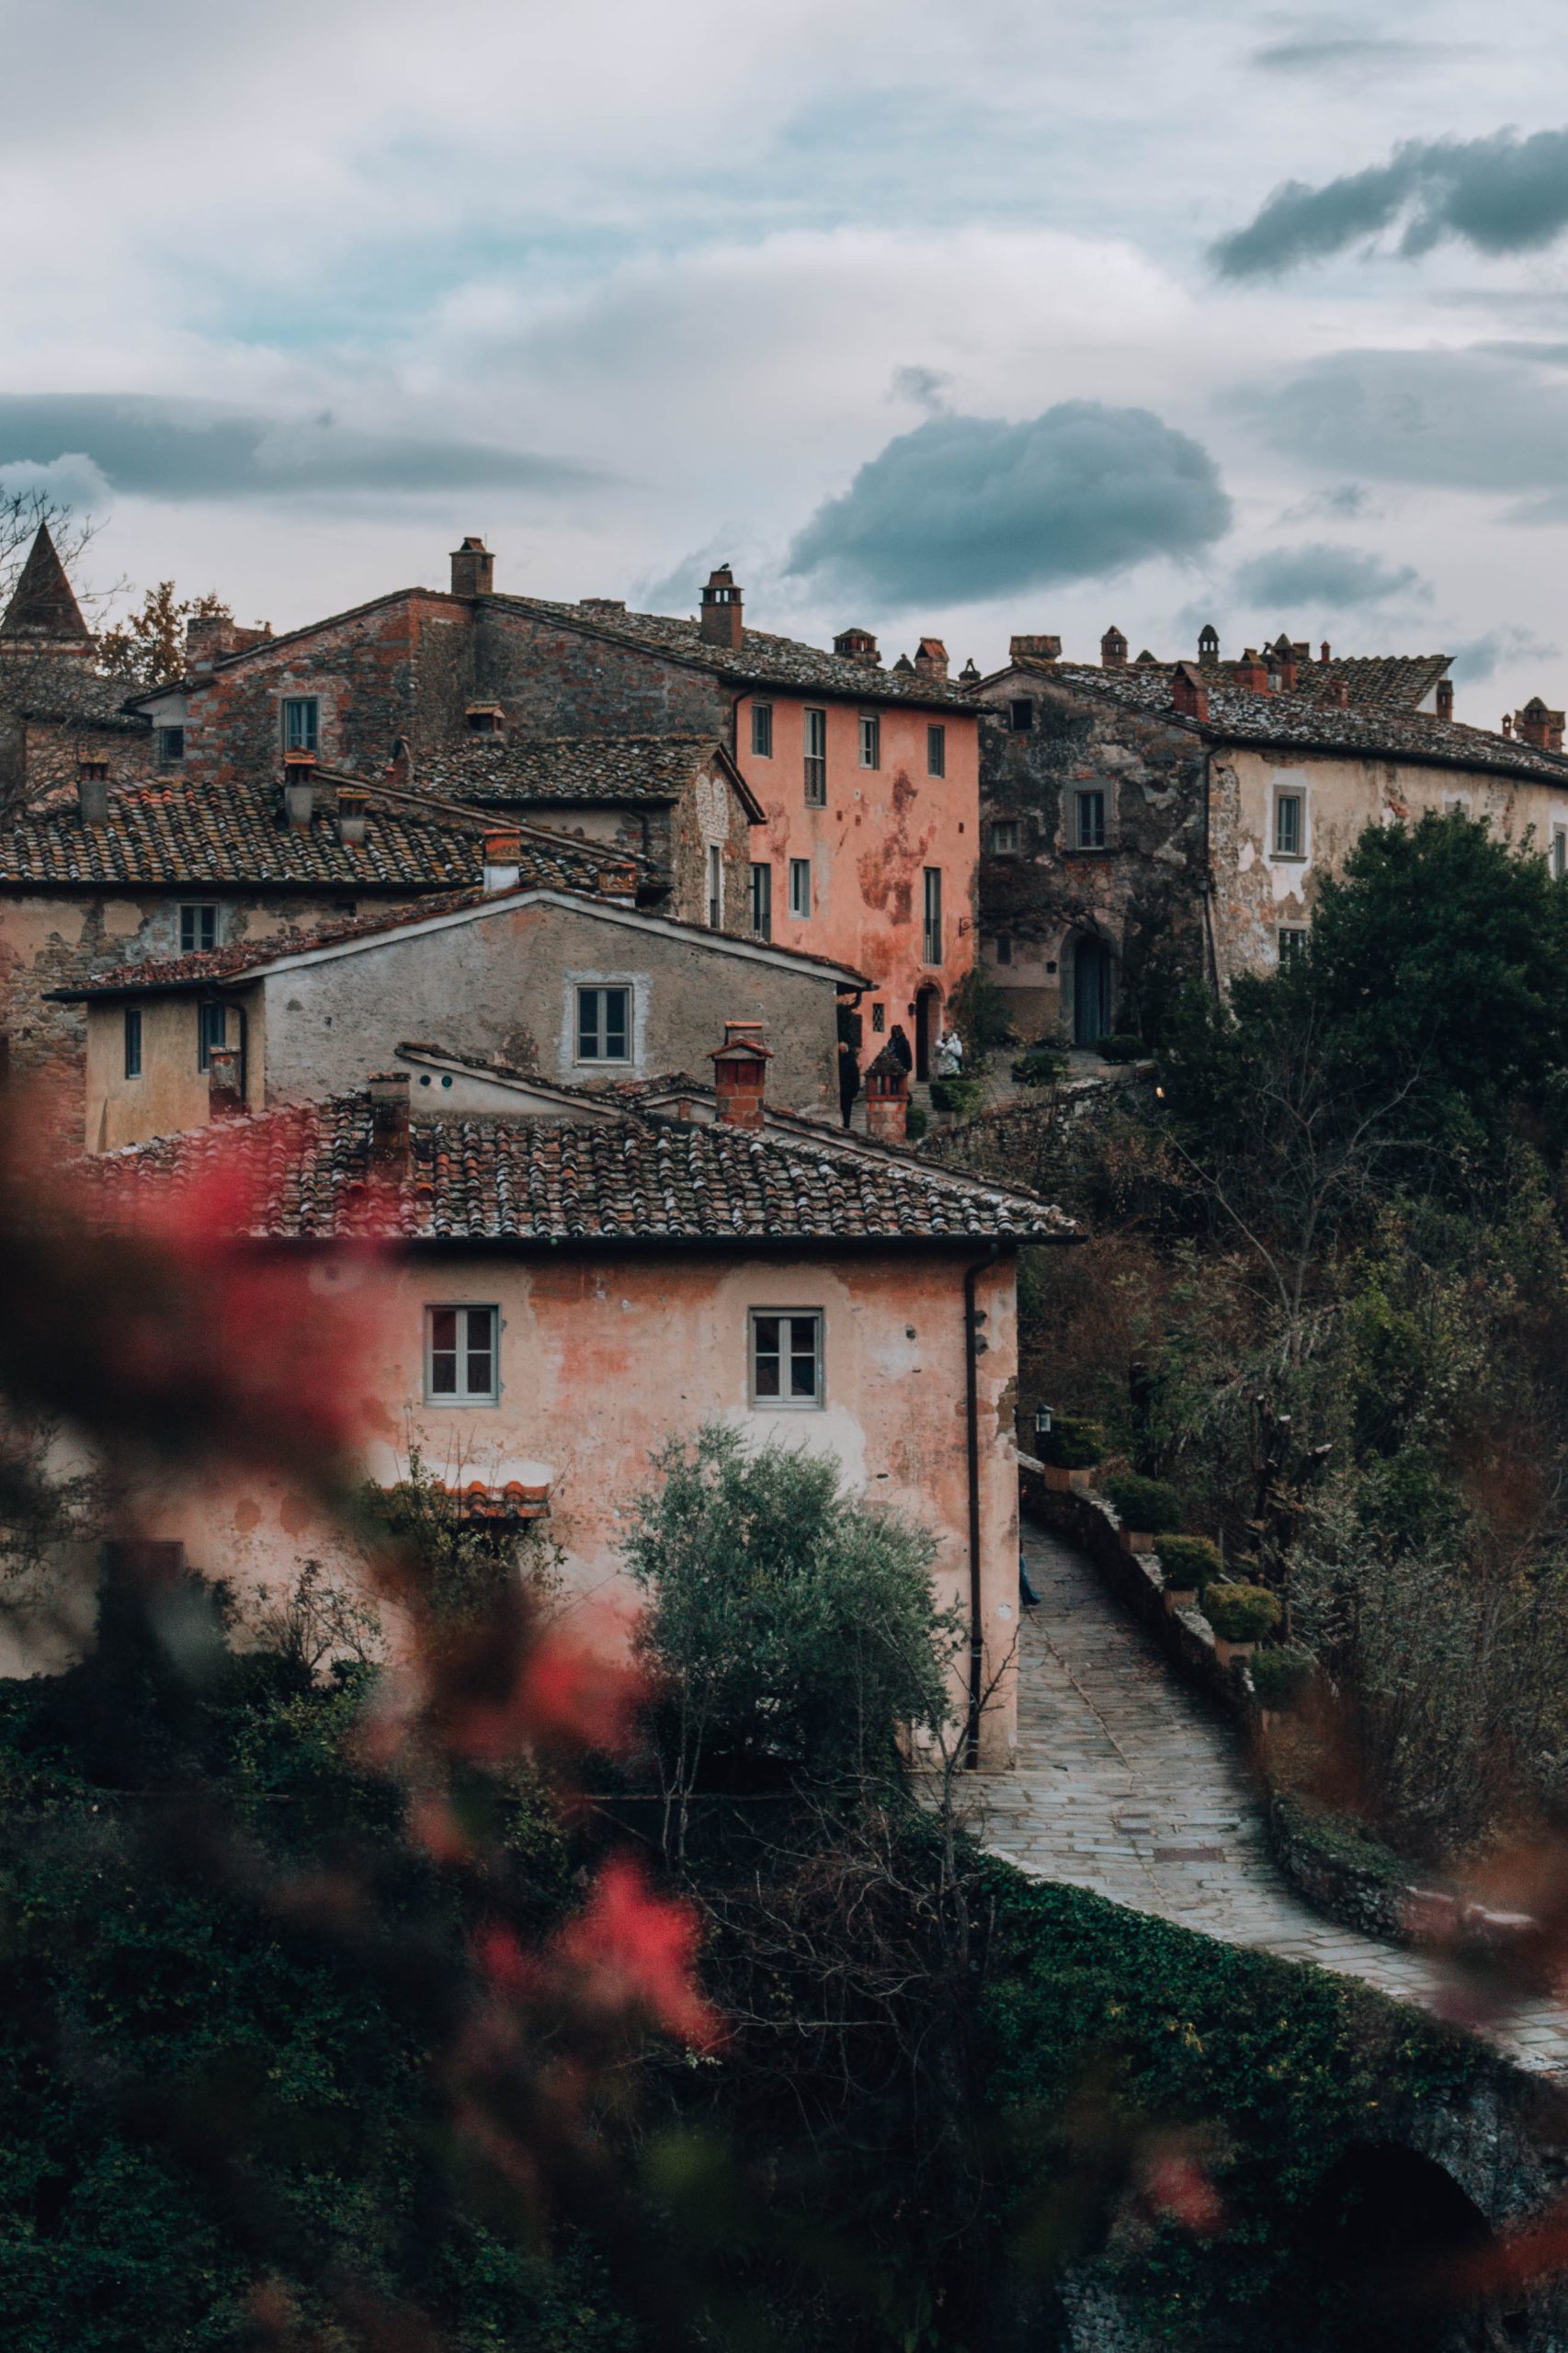 Cosa vedere vicino Firenze: posti da vedere nel Valdarno